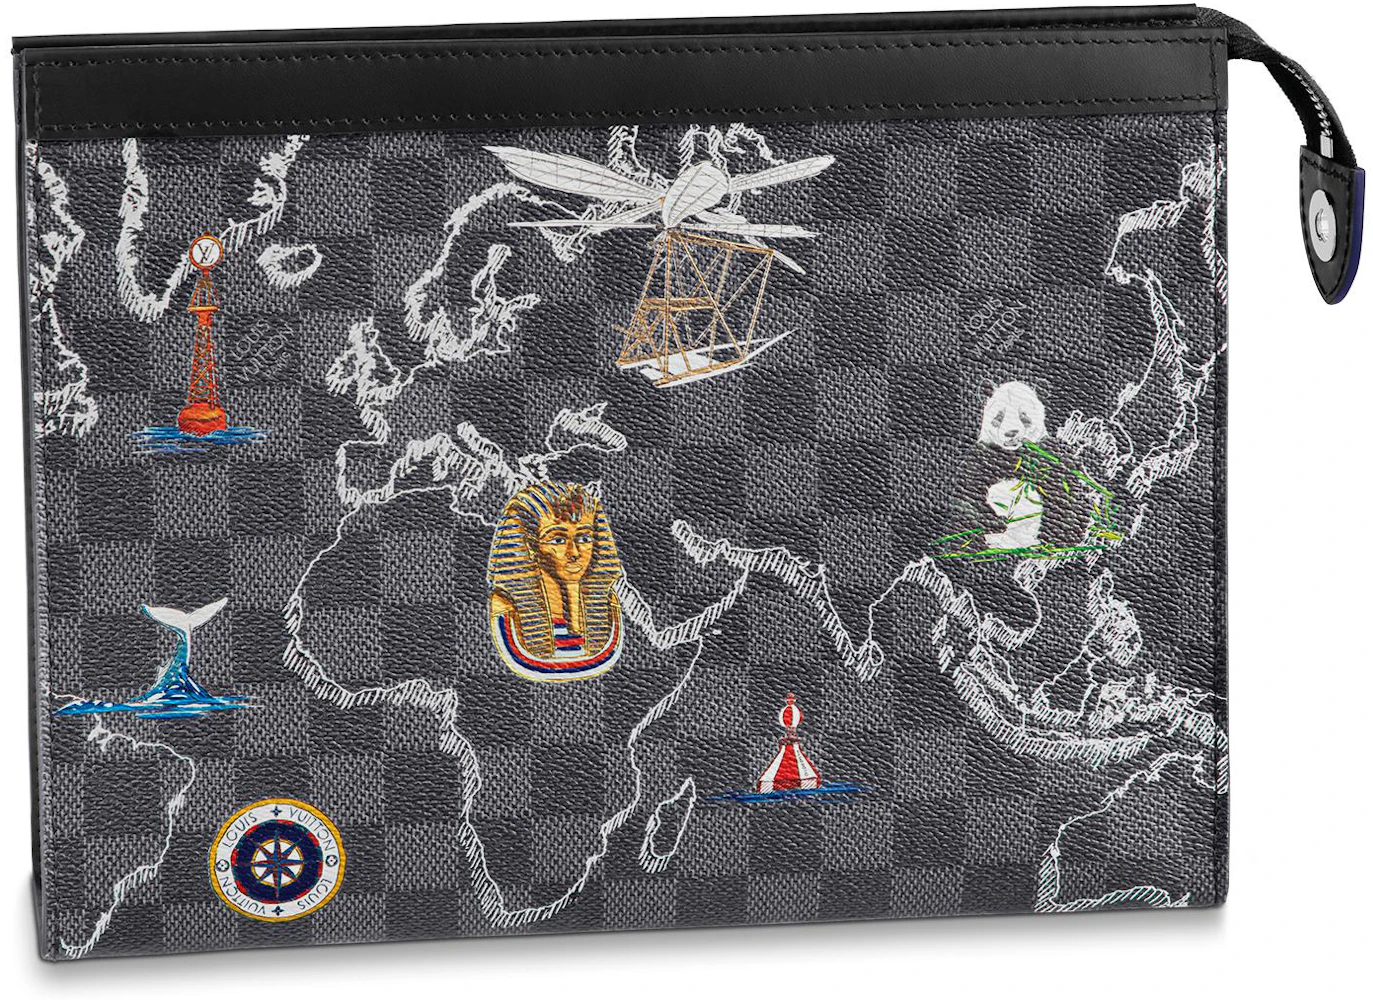 Louis Vuitton Pochette Voyage Damier Graphite Map MM Grey/Black in